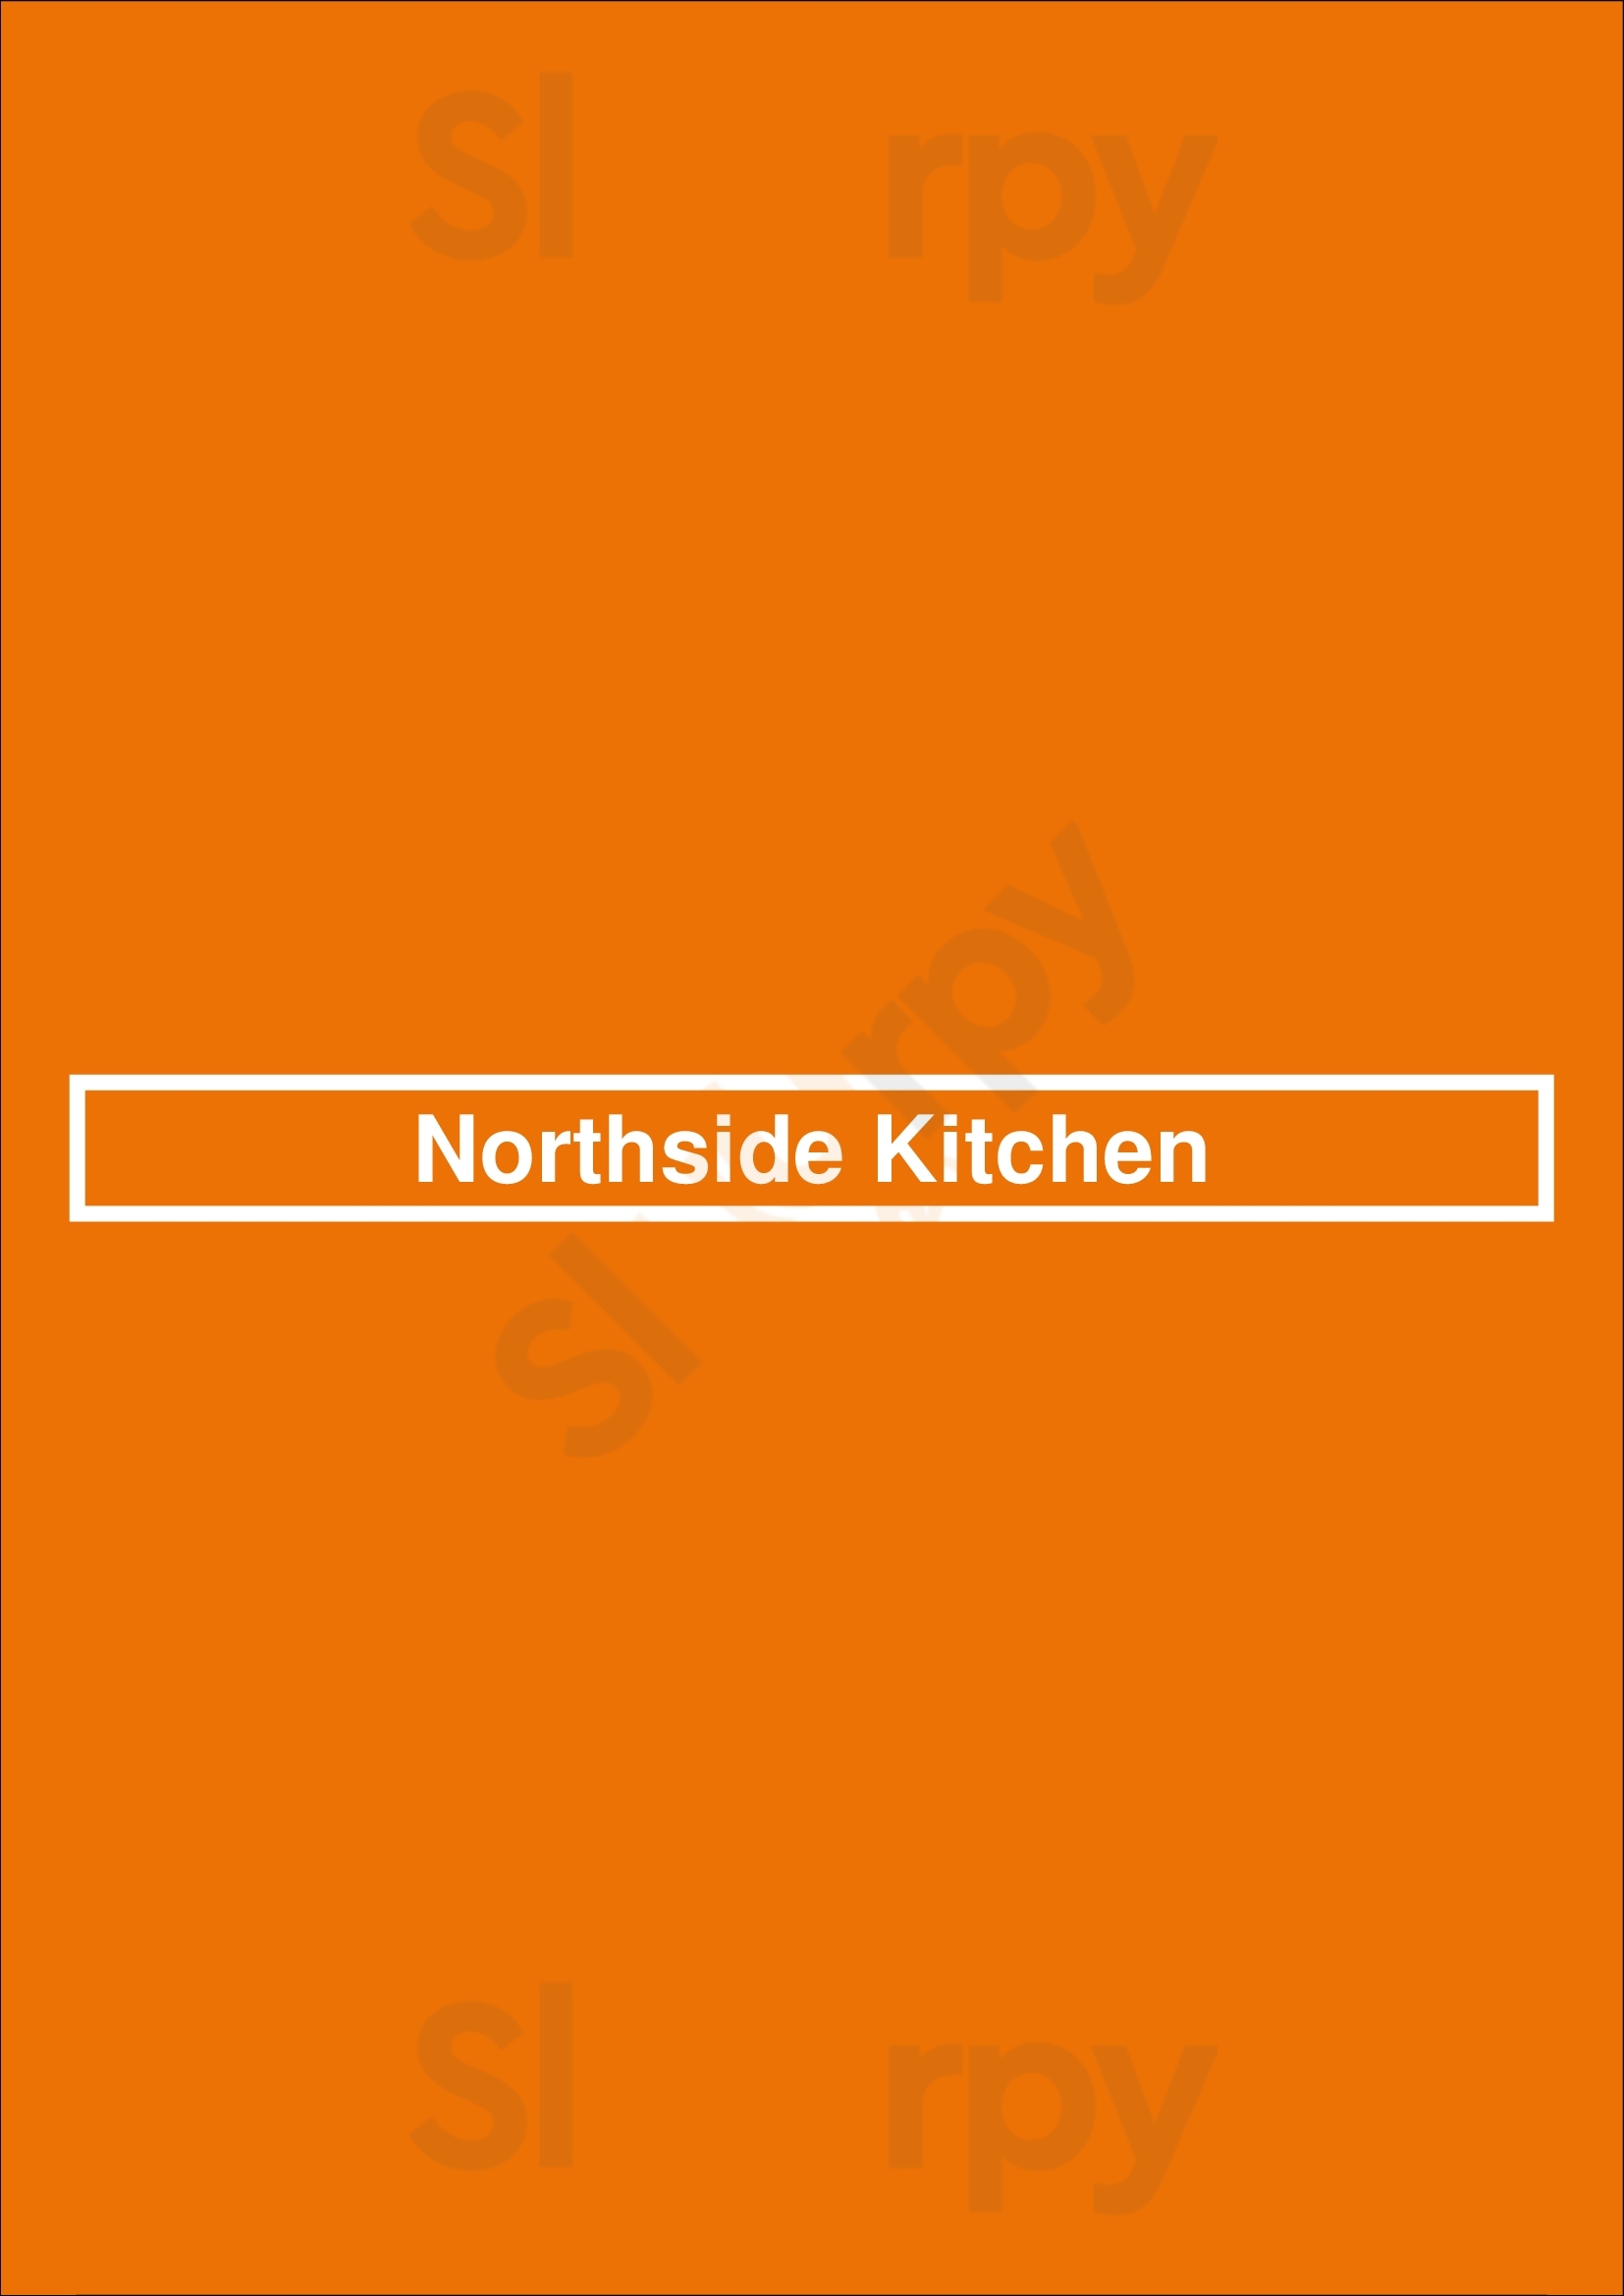 Northside Kitchen Avon Menu - 1